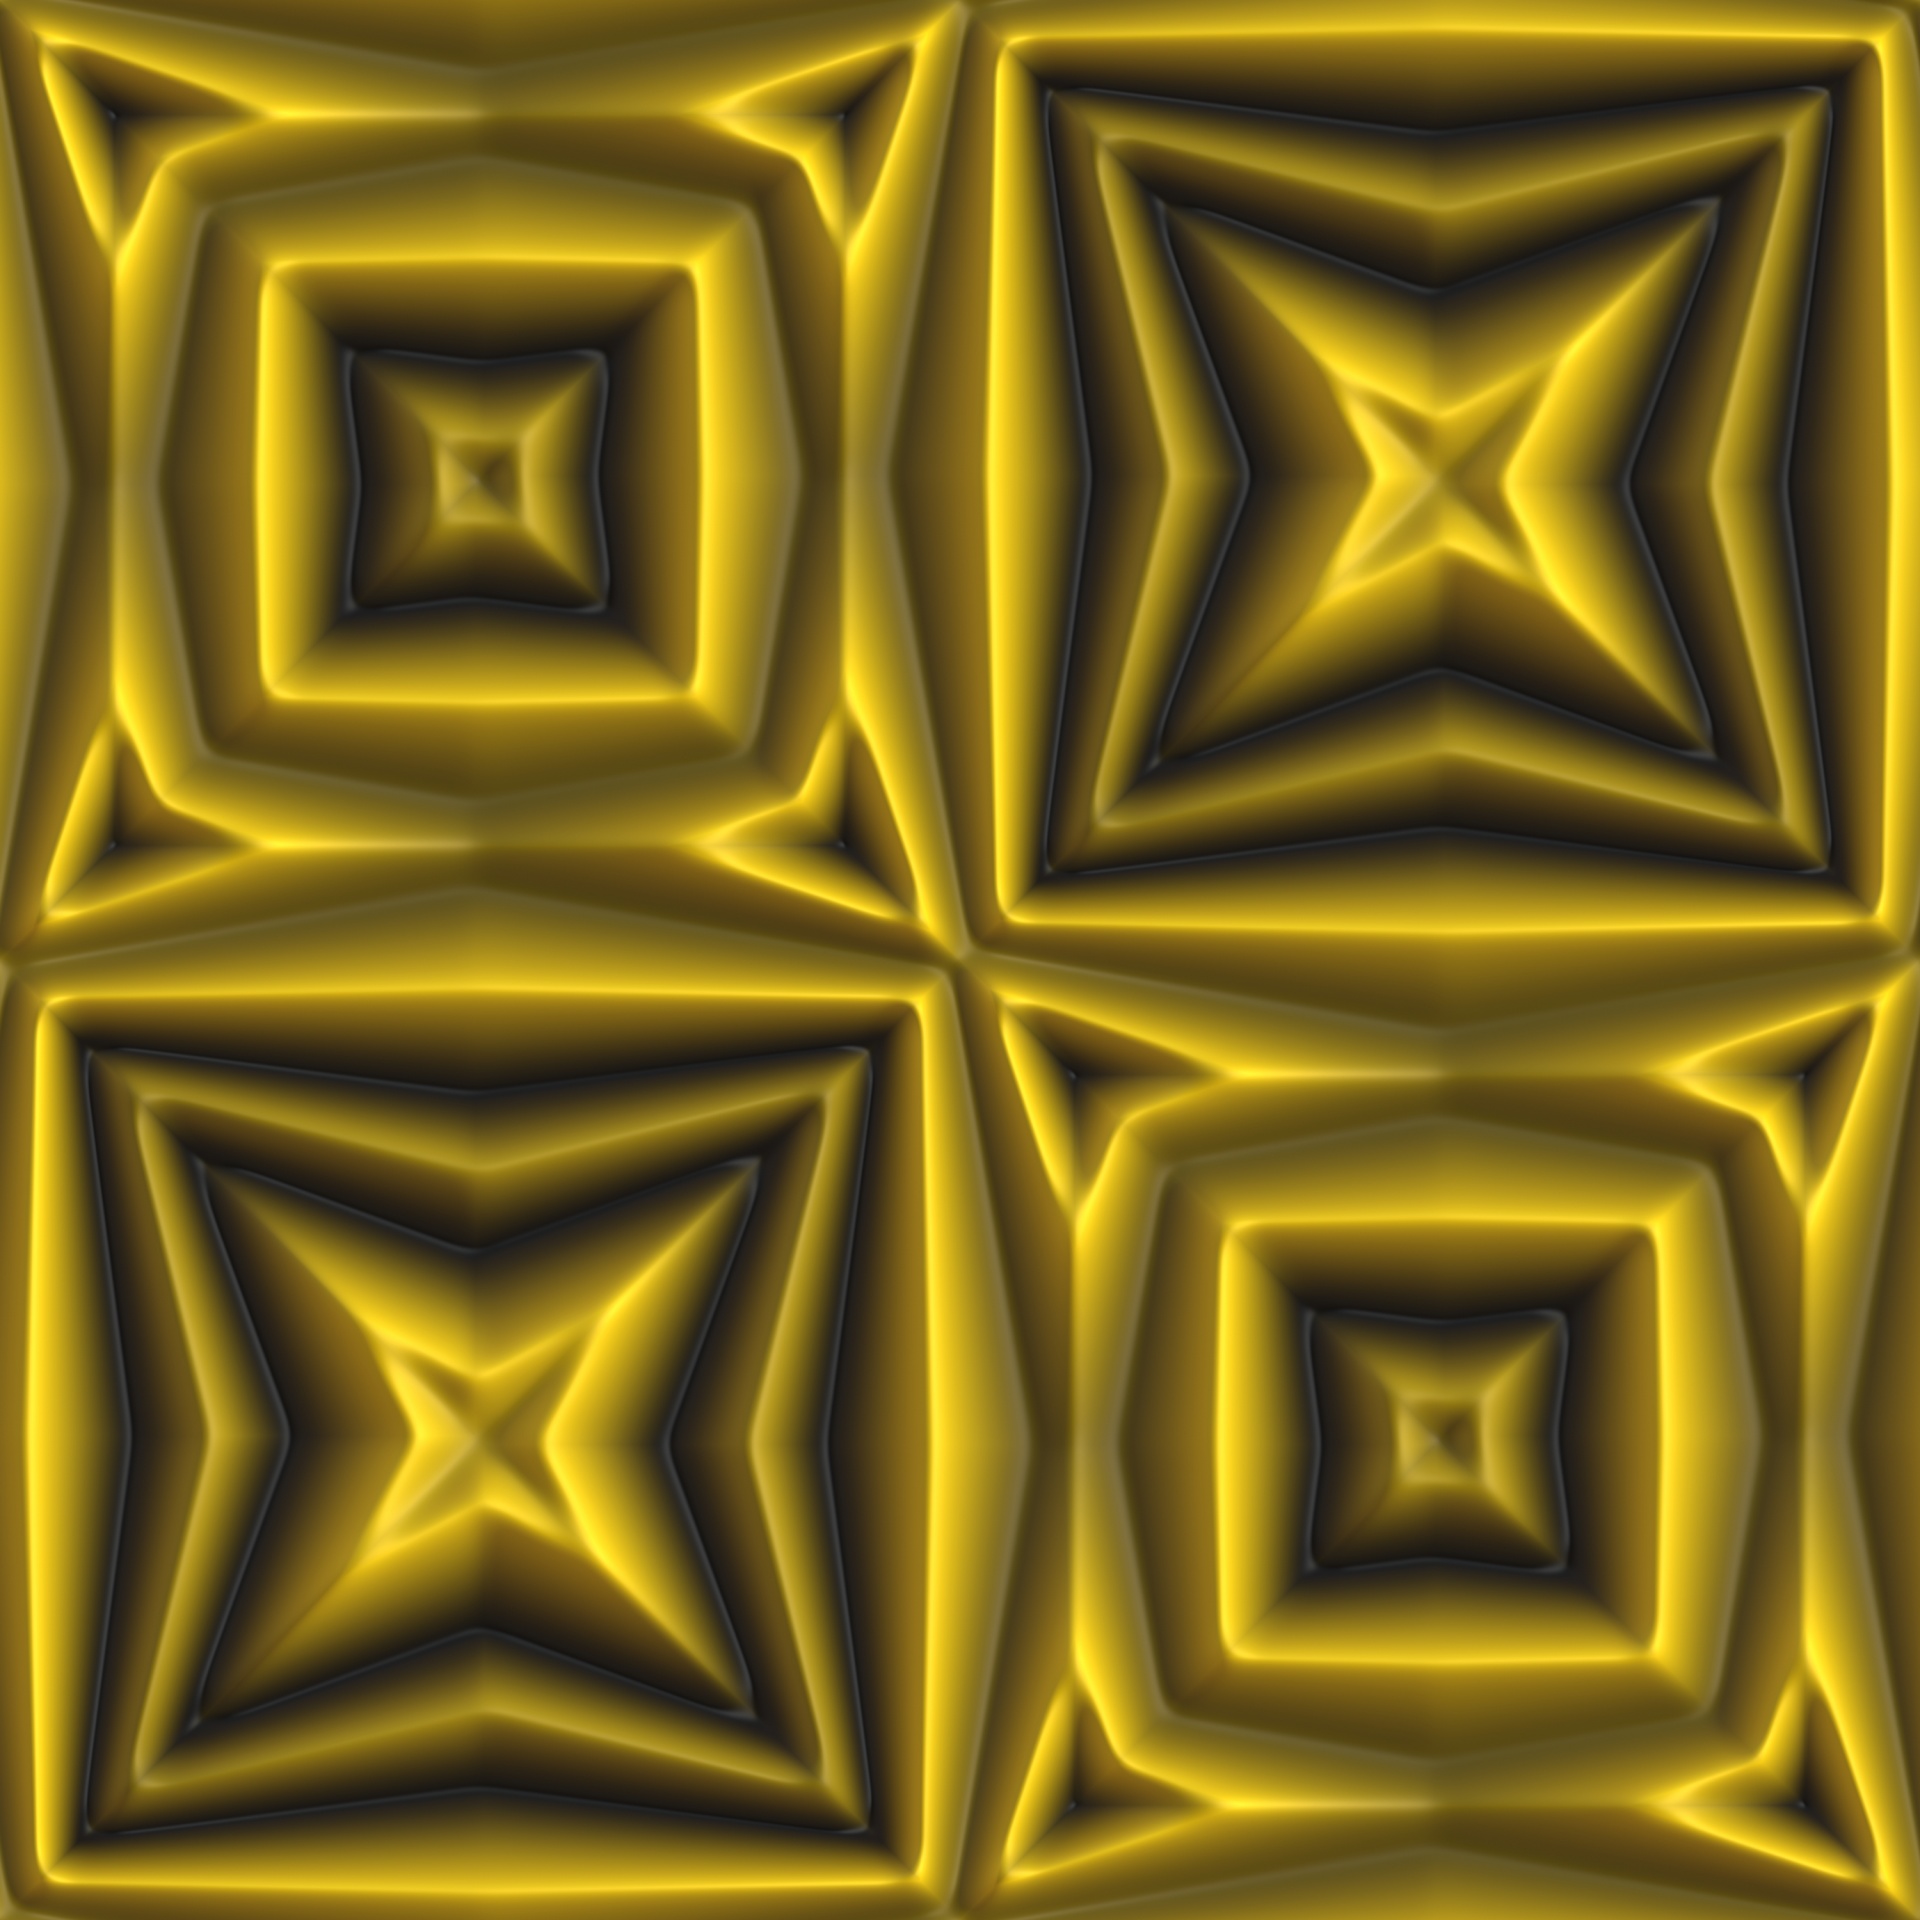 4 Golden Tiles